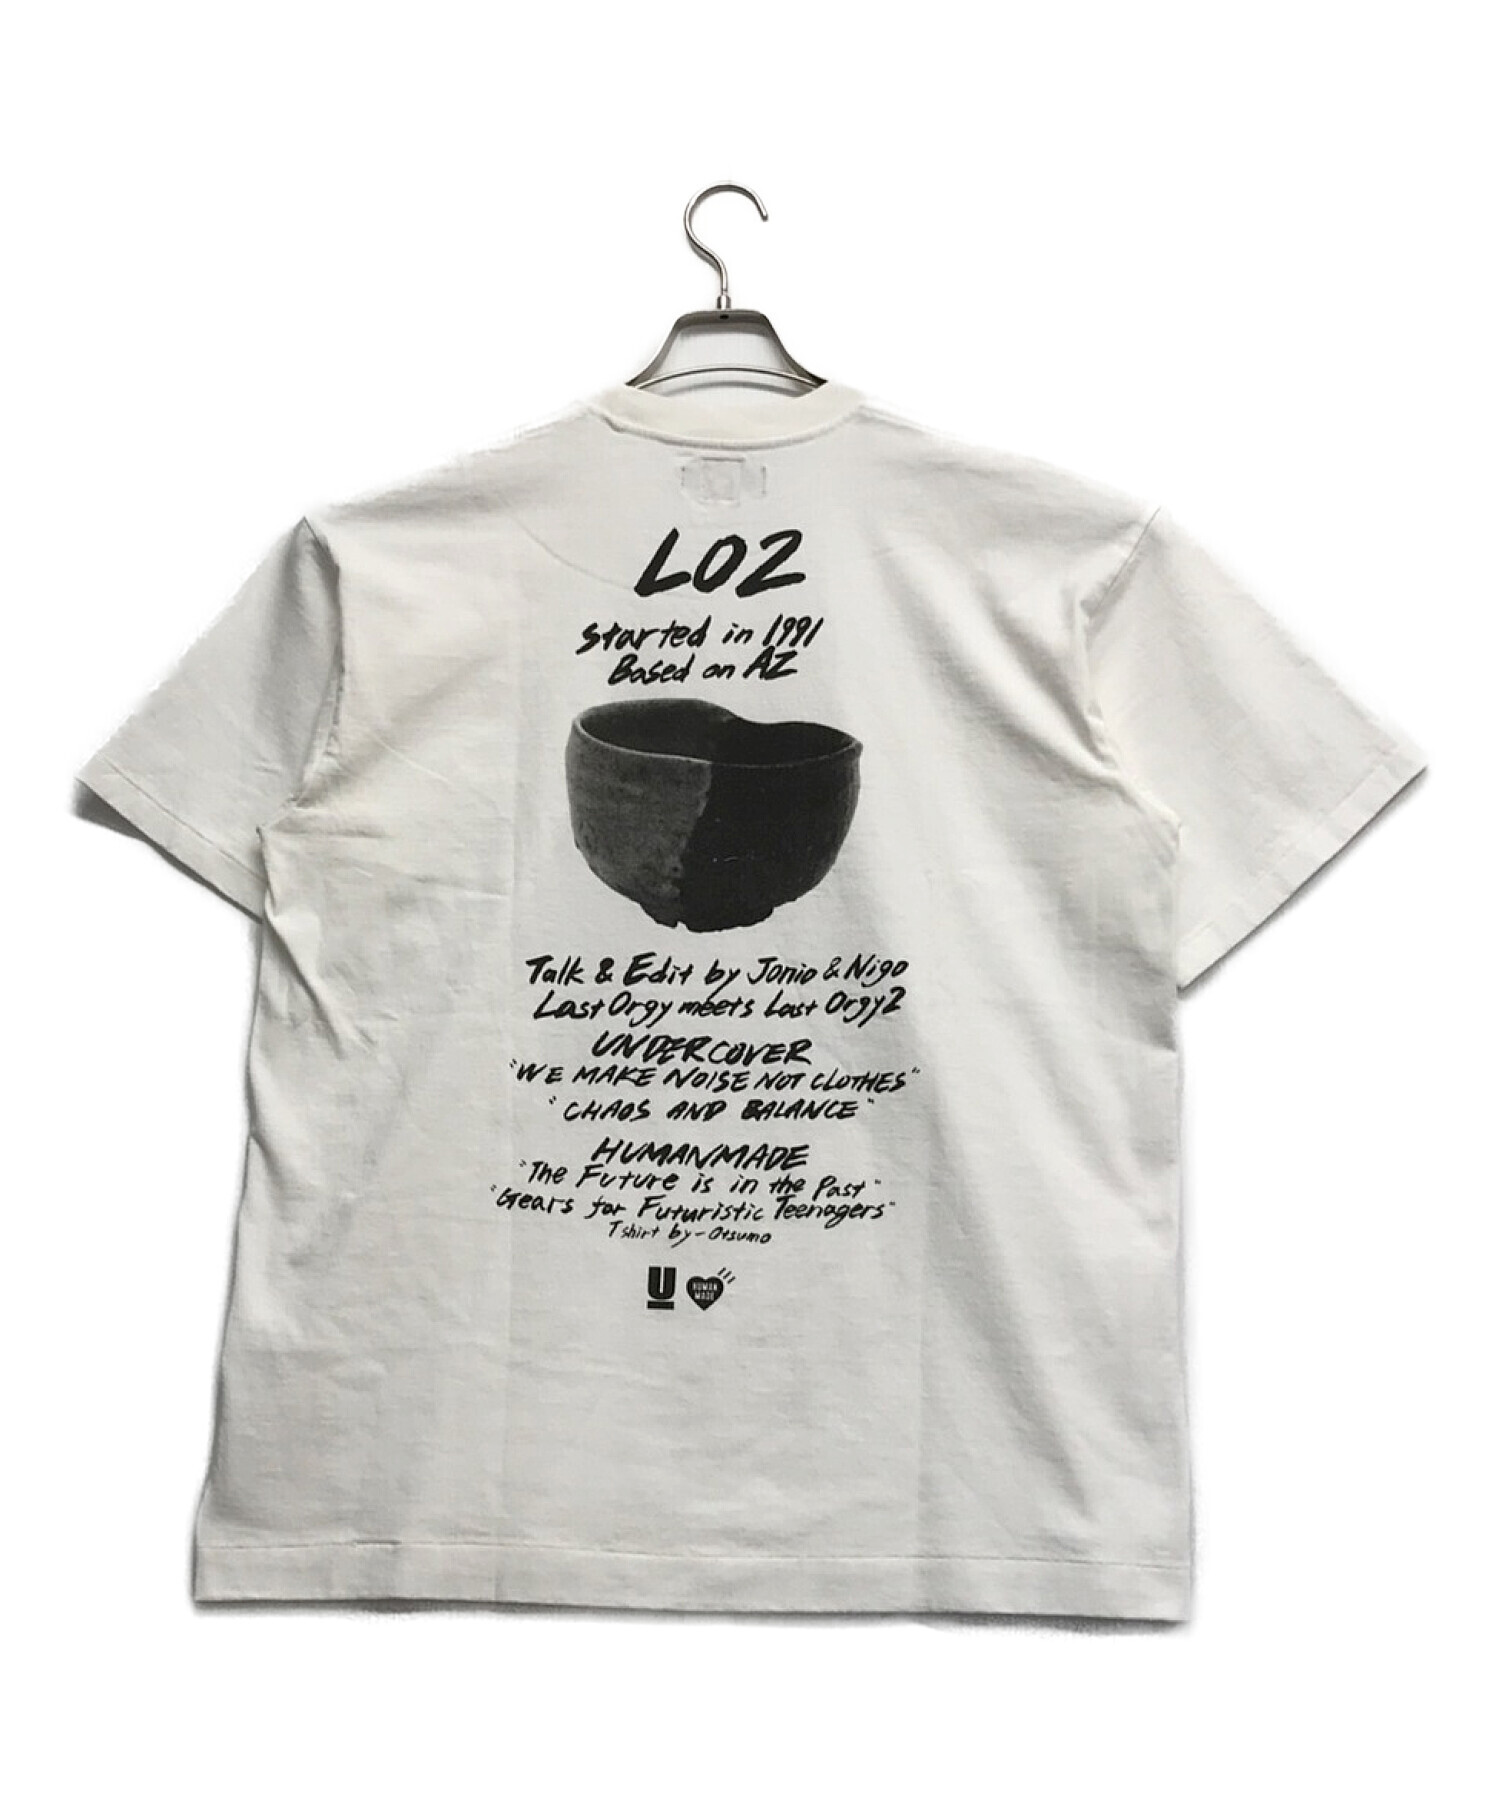 アンダーカバー×ヒューマンメード Tシャツ ロゴ 両面プリント XL サイズ